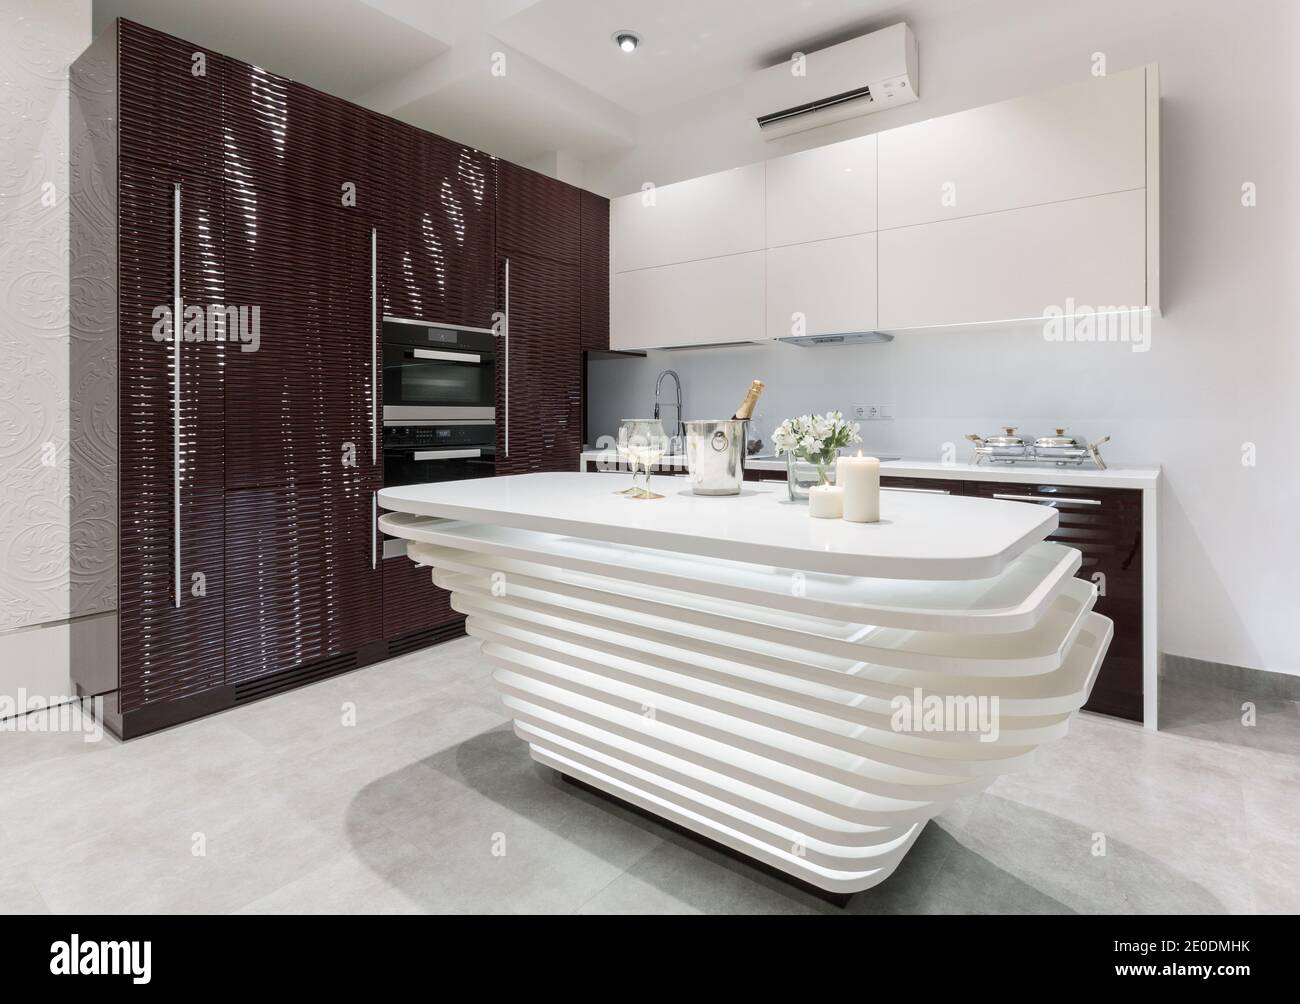 Interior de cocina moderna amueblada con paneles de cara en 3D de cerezo oscuro e isla blanca. Concepto de diseño de cocina Foto de stock